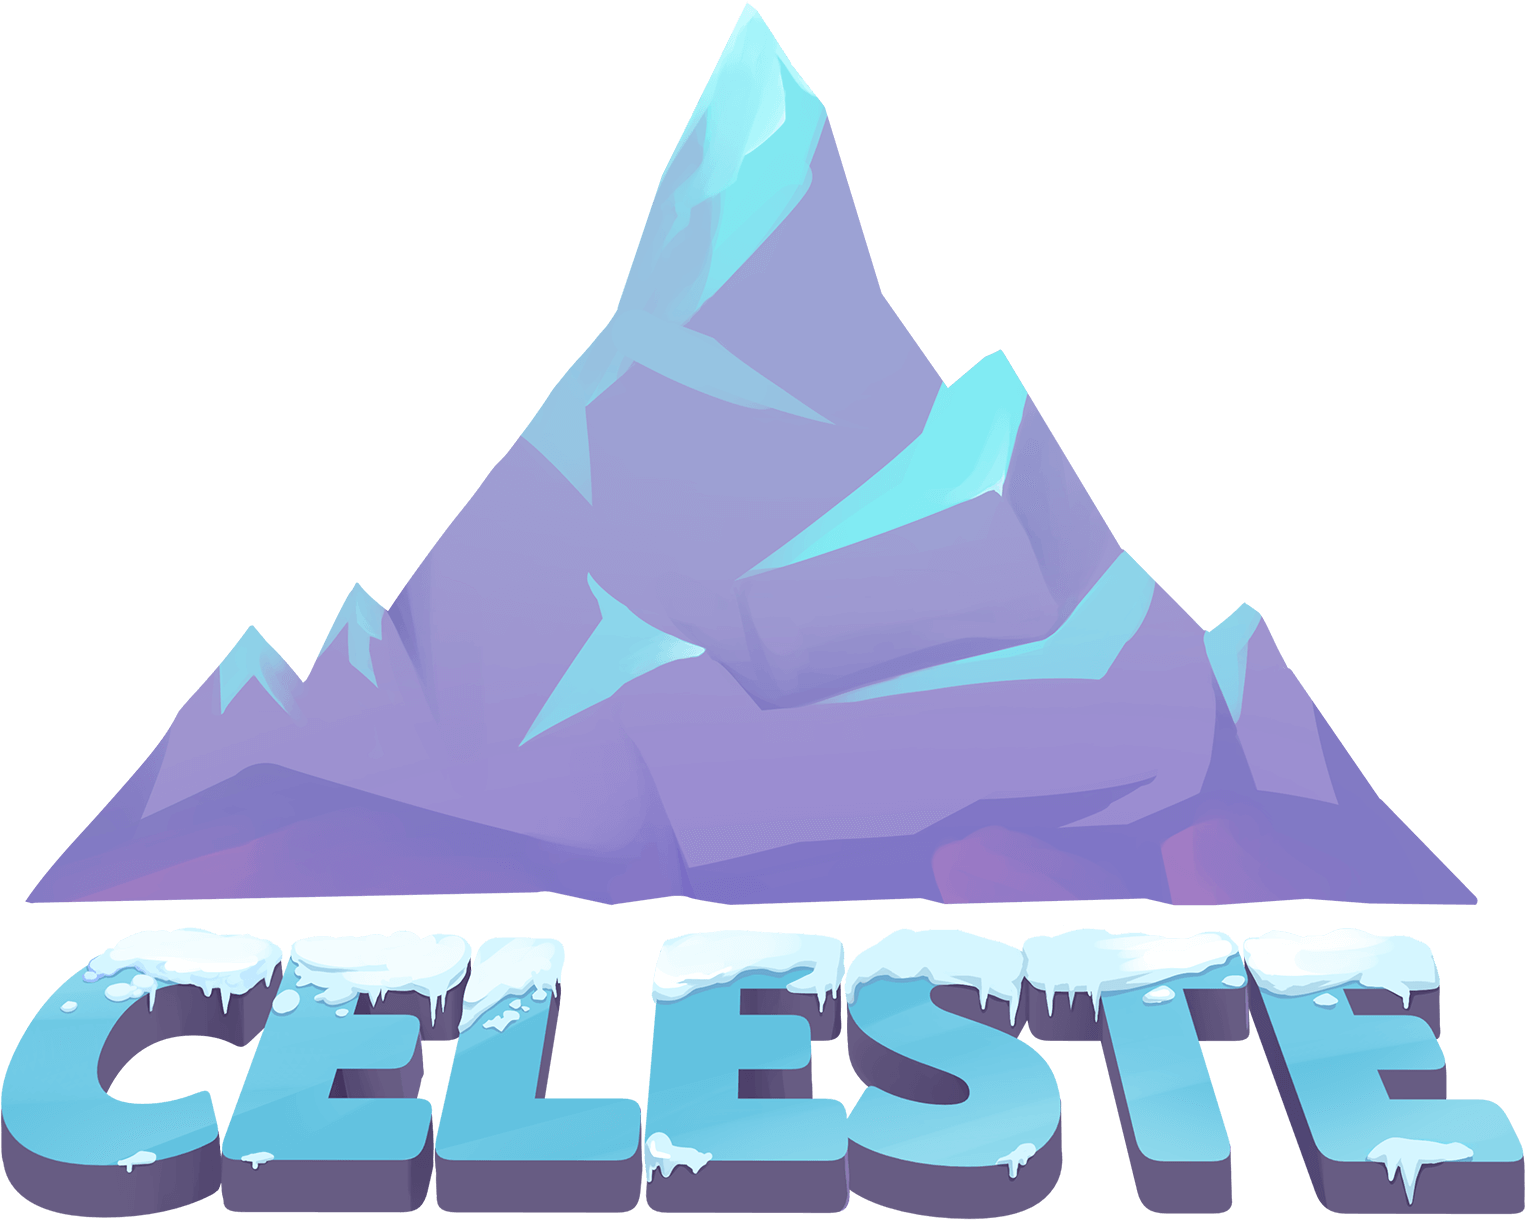 Celeste Game Logo PNG File